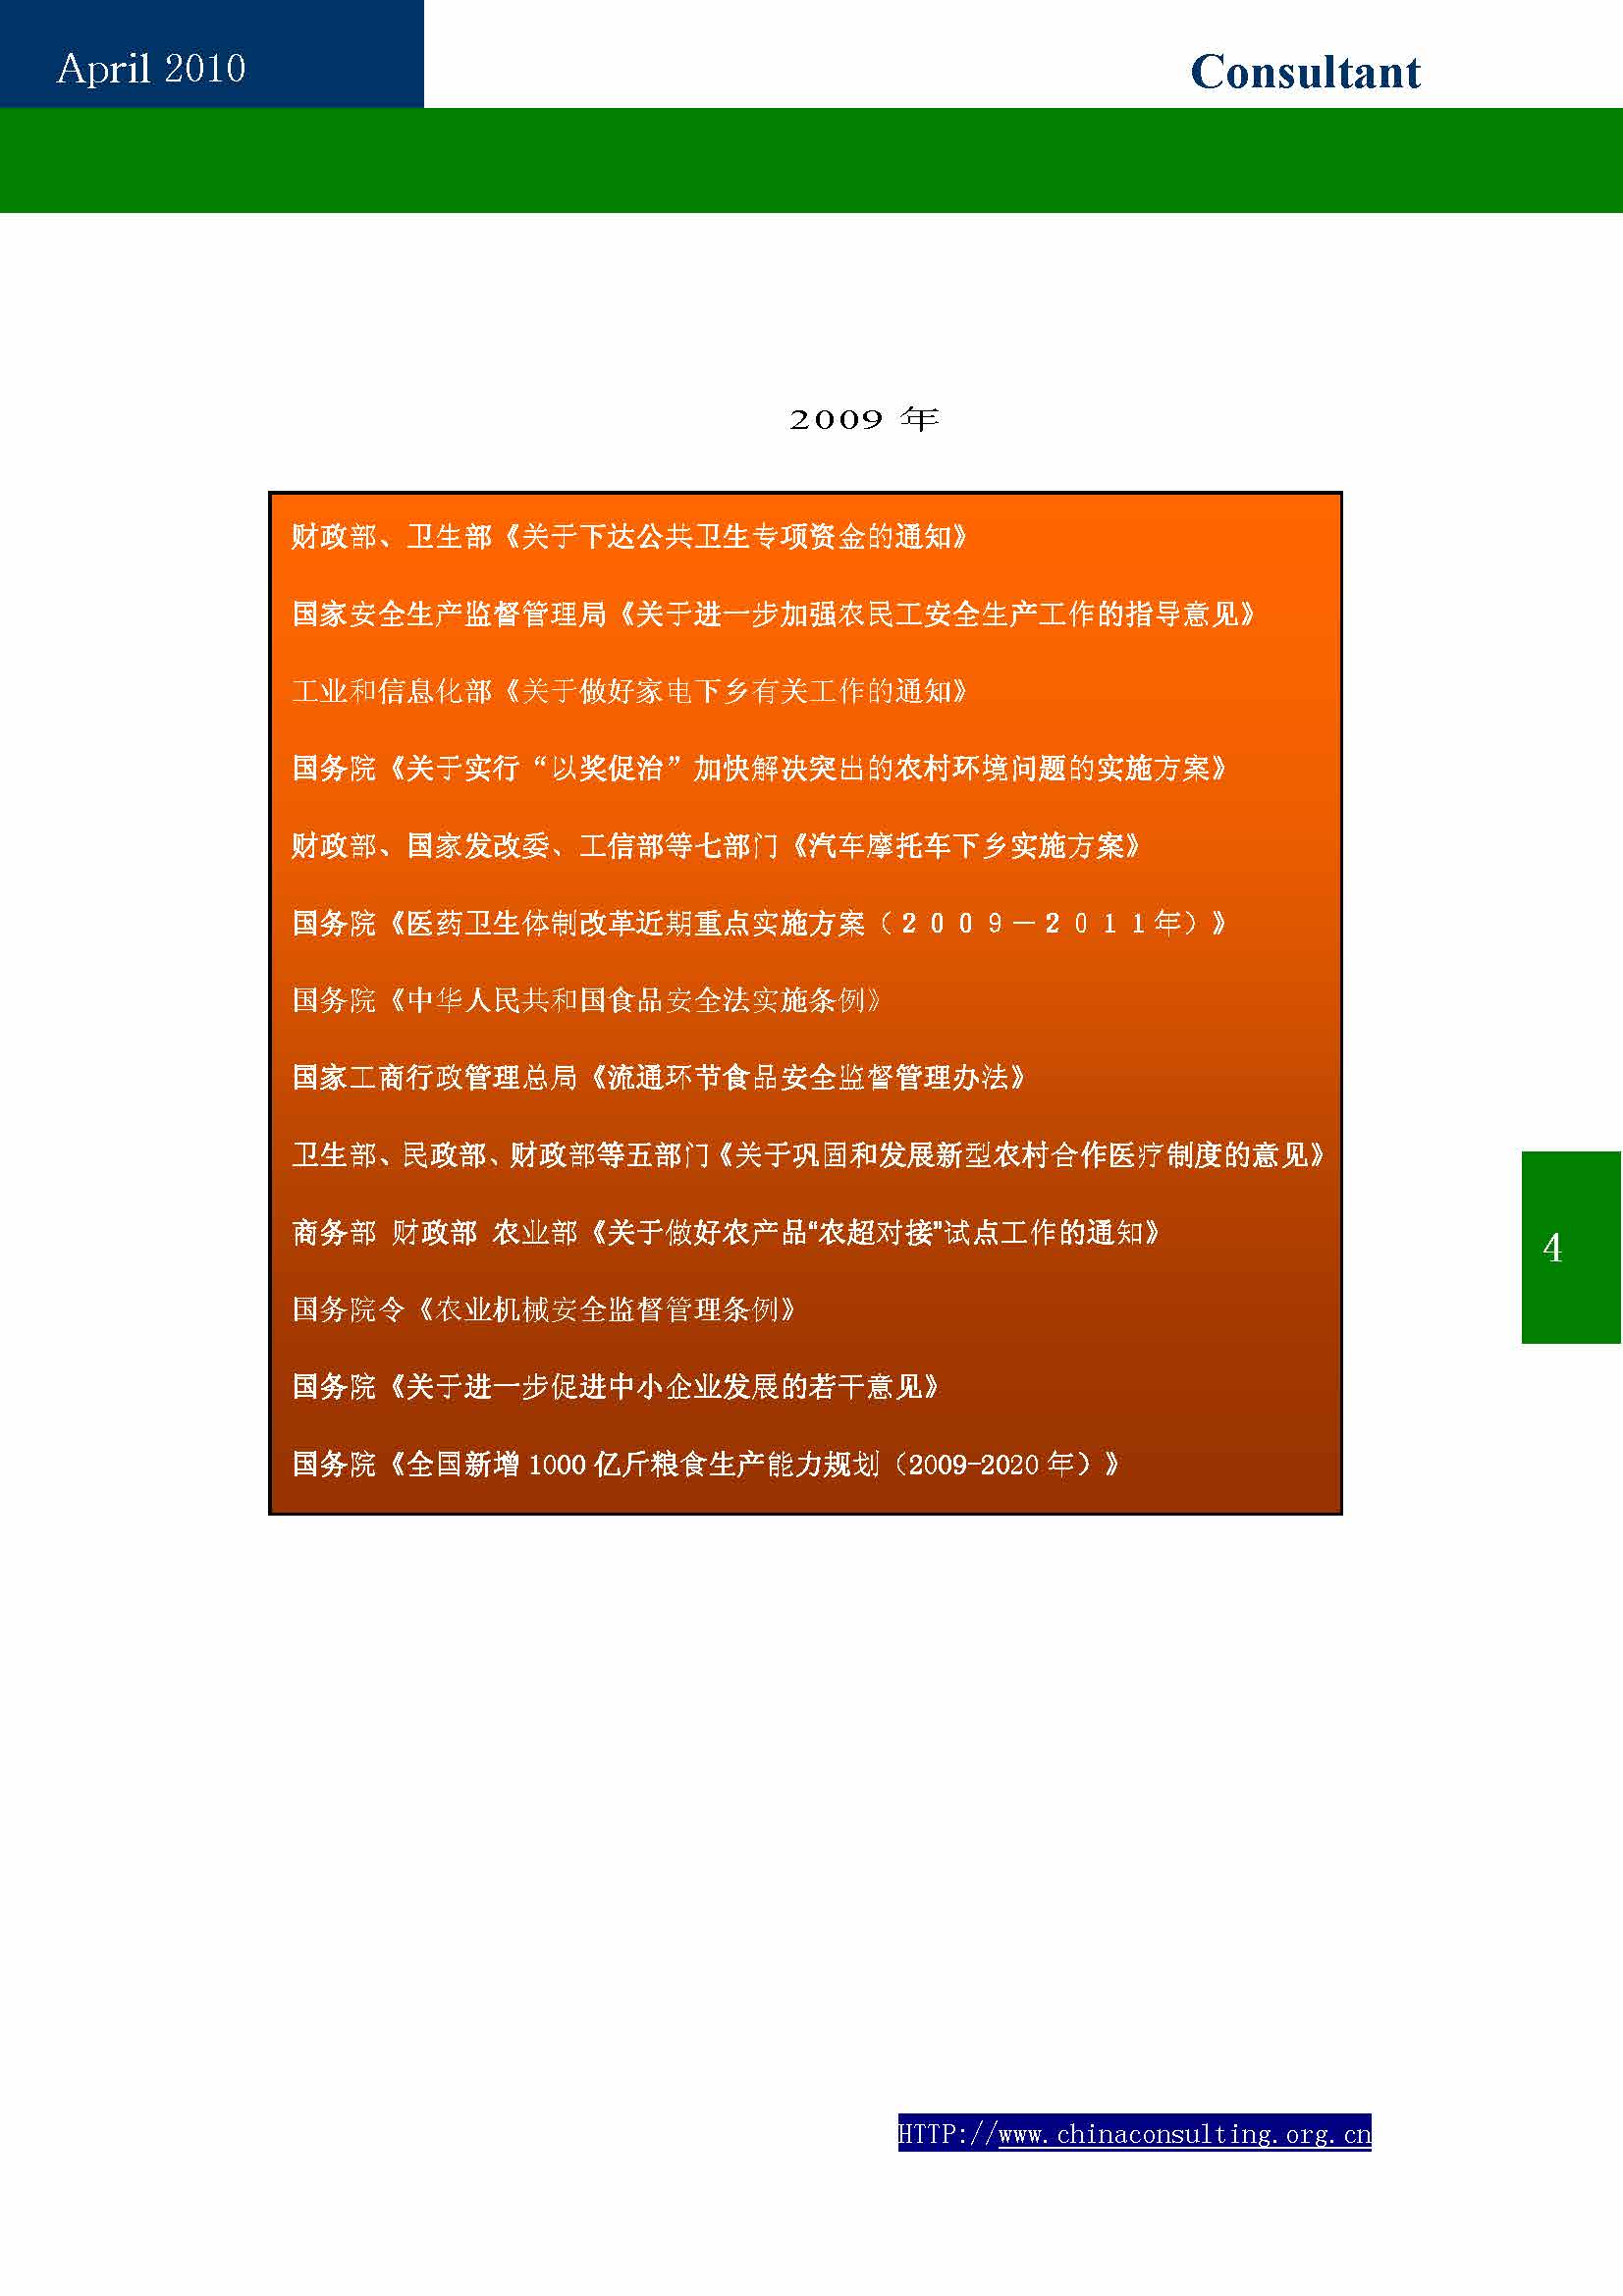 9中国科技咨询协会第九期会刊_页面_06.jpg